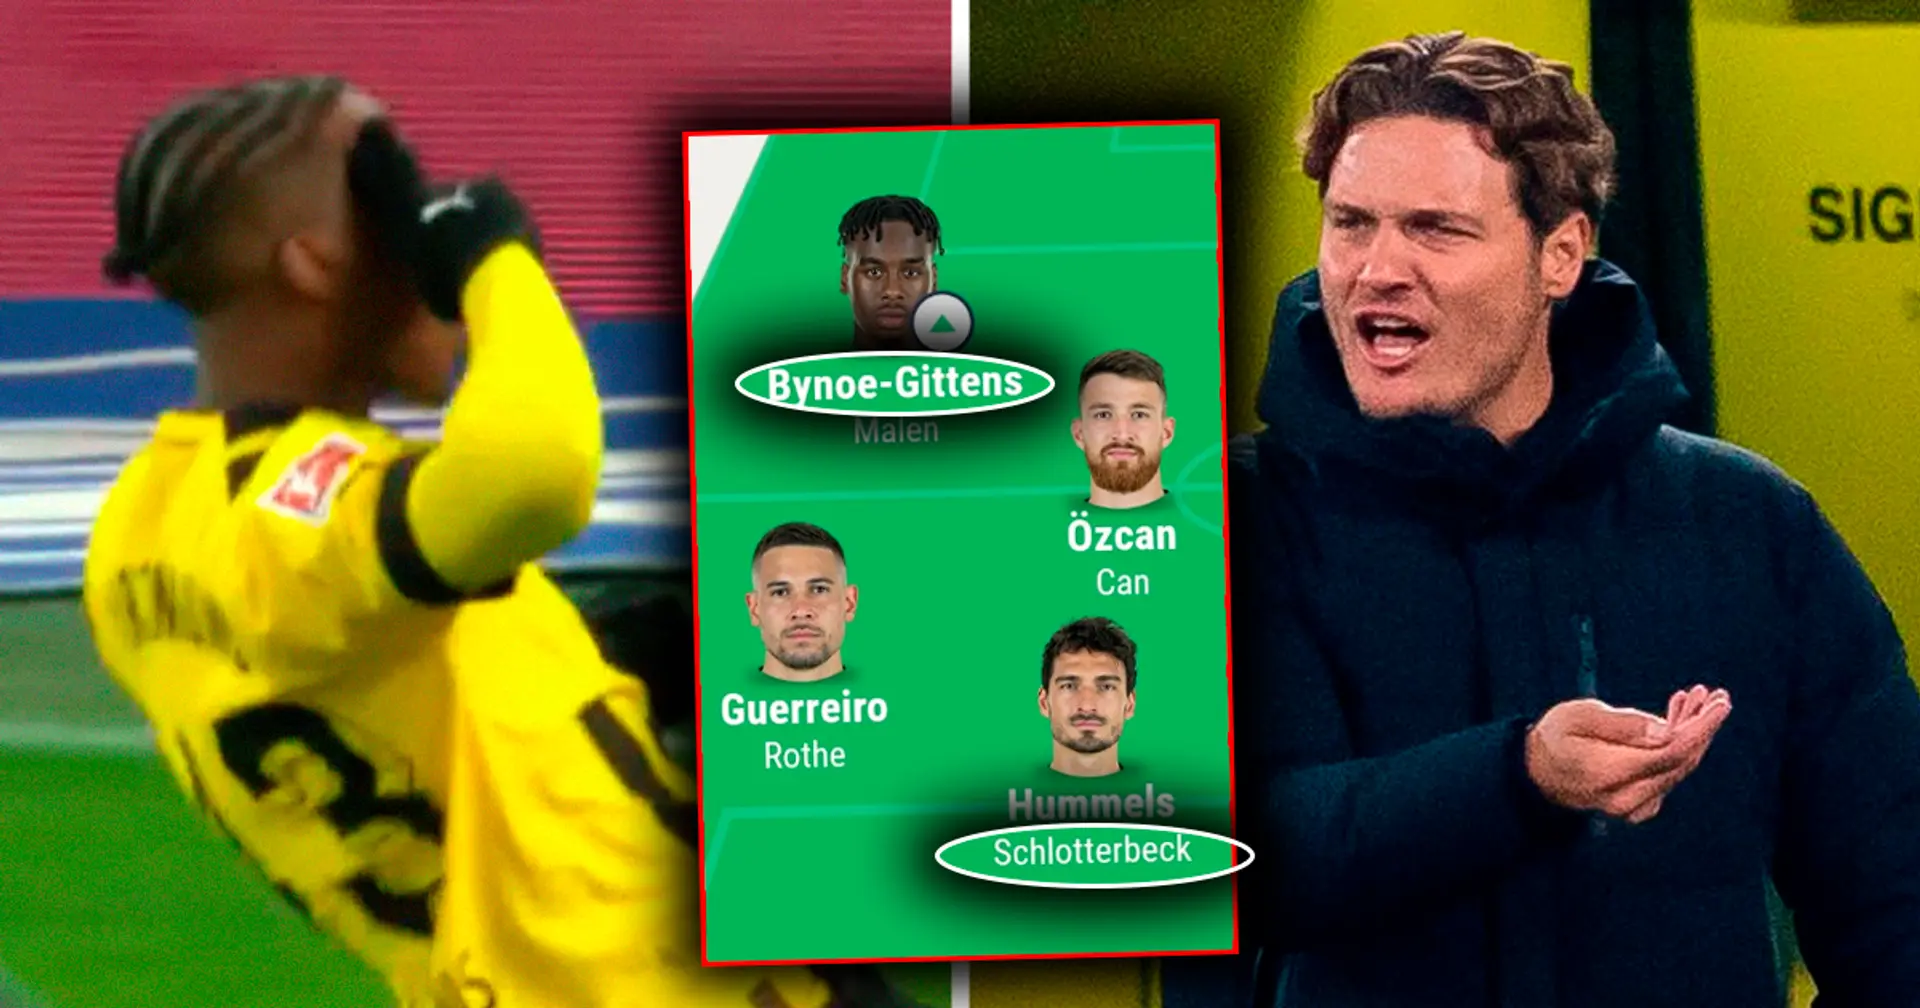 Bynoe-Gittens in der Startelf und 4 weitere Wechsel: BVB-Fan schlägt diese Aufstellung für Mainz-Spiel vor